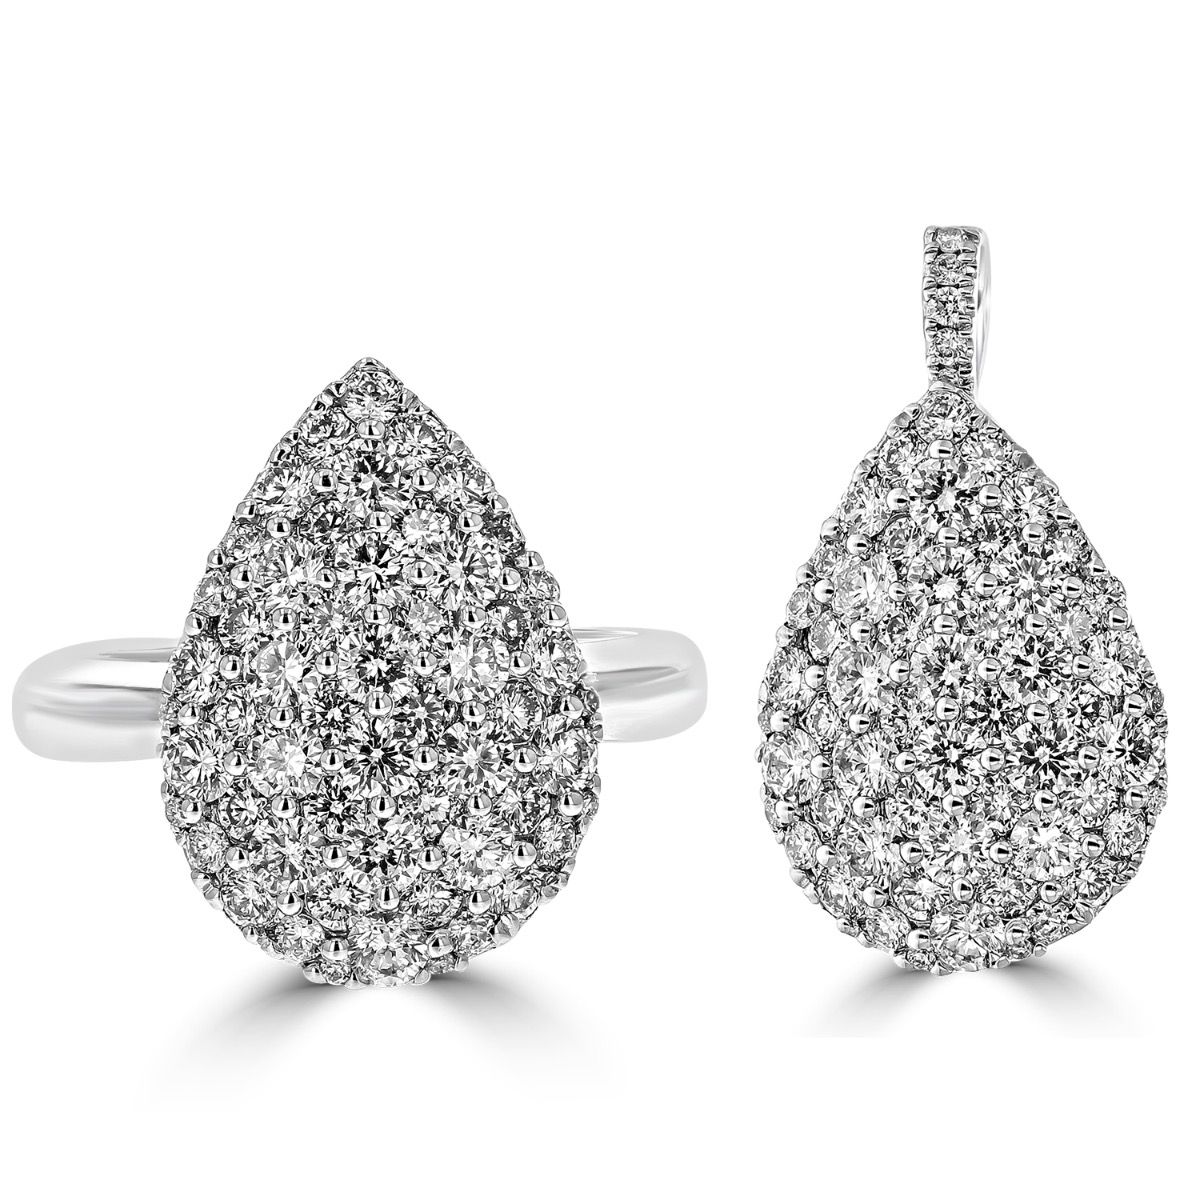 14KT WHITE GOLD 2.07 CTW DIAMOND EVOLVING PEAR SHAPE RING AND PENDANT 4 / Diamond Pendants,4.5 / Diamond Pendants,5 / Diamond Pendants,5.5 / Diamond Pendants,6 / Diamond Pendants,6.5 / Diamond Pendants,7 / Diamond Pendants,7.5 / Diamond Pendants,8 / Diamond Pendants,8.5 / Diamond Pendants,9 / Diamond Pendants,4 / Diamond Rings,4.5 / Diamond Rings,5 / Diamond Rings,5.5 / Diamond Rings,6 / Diamond Rings,6.5 / Diamond Rings,7 / Diamond Rings,7.5 / Diamond Rings,8 / Diamond Rings,8.5 / Diamond Rings,9 / Diamond